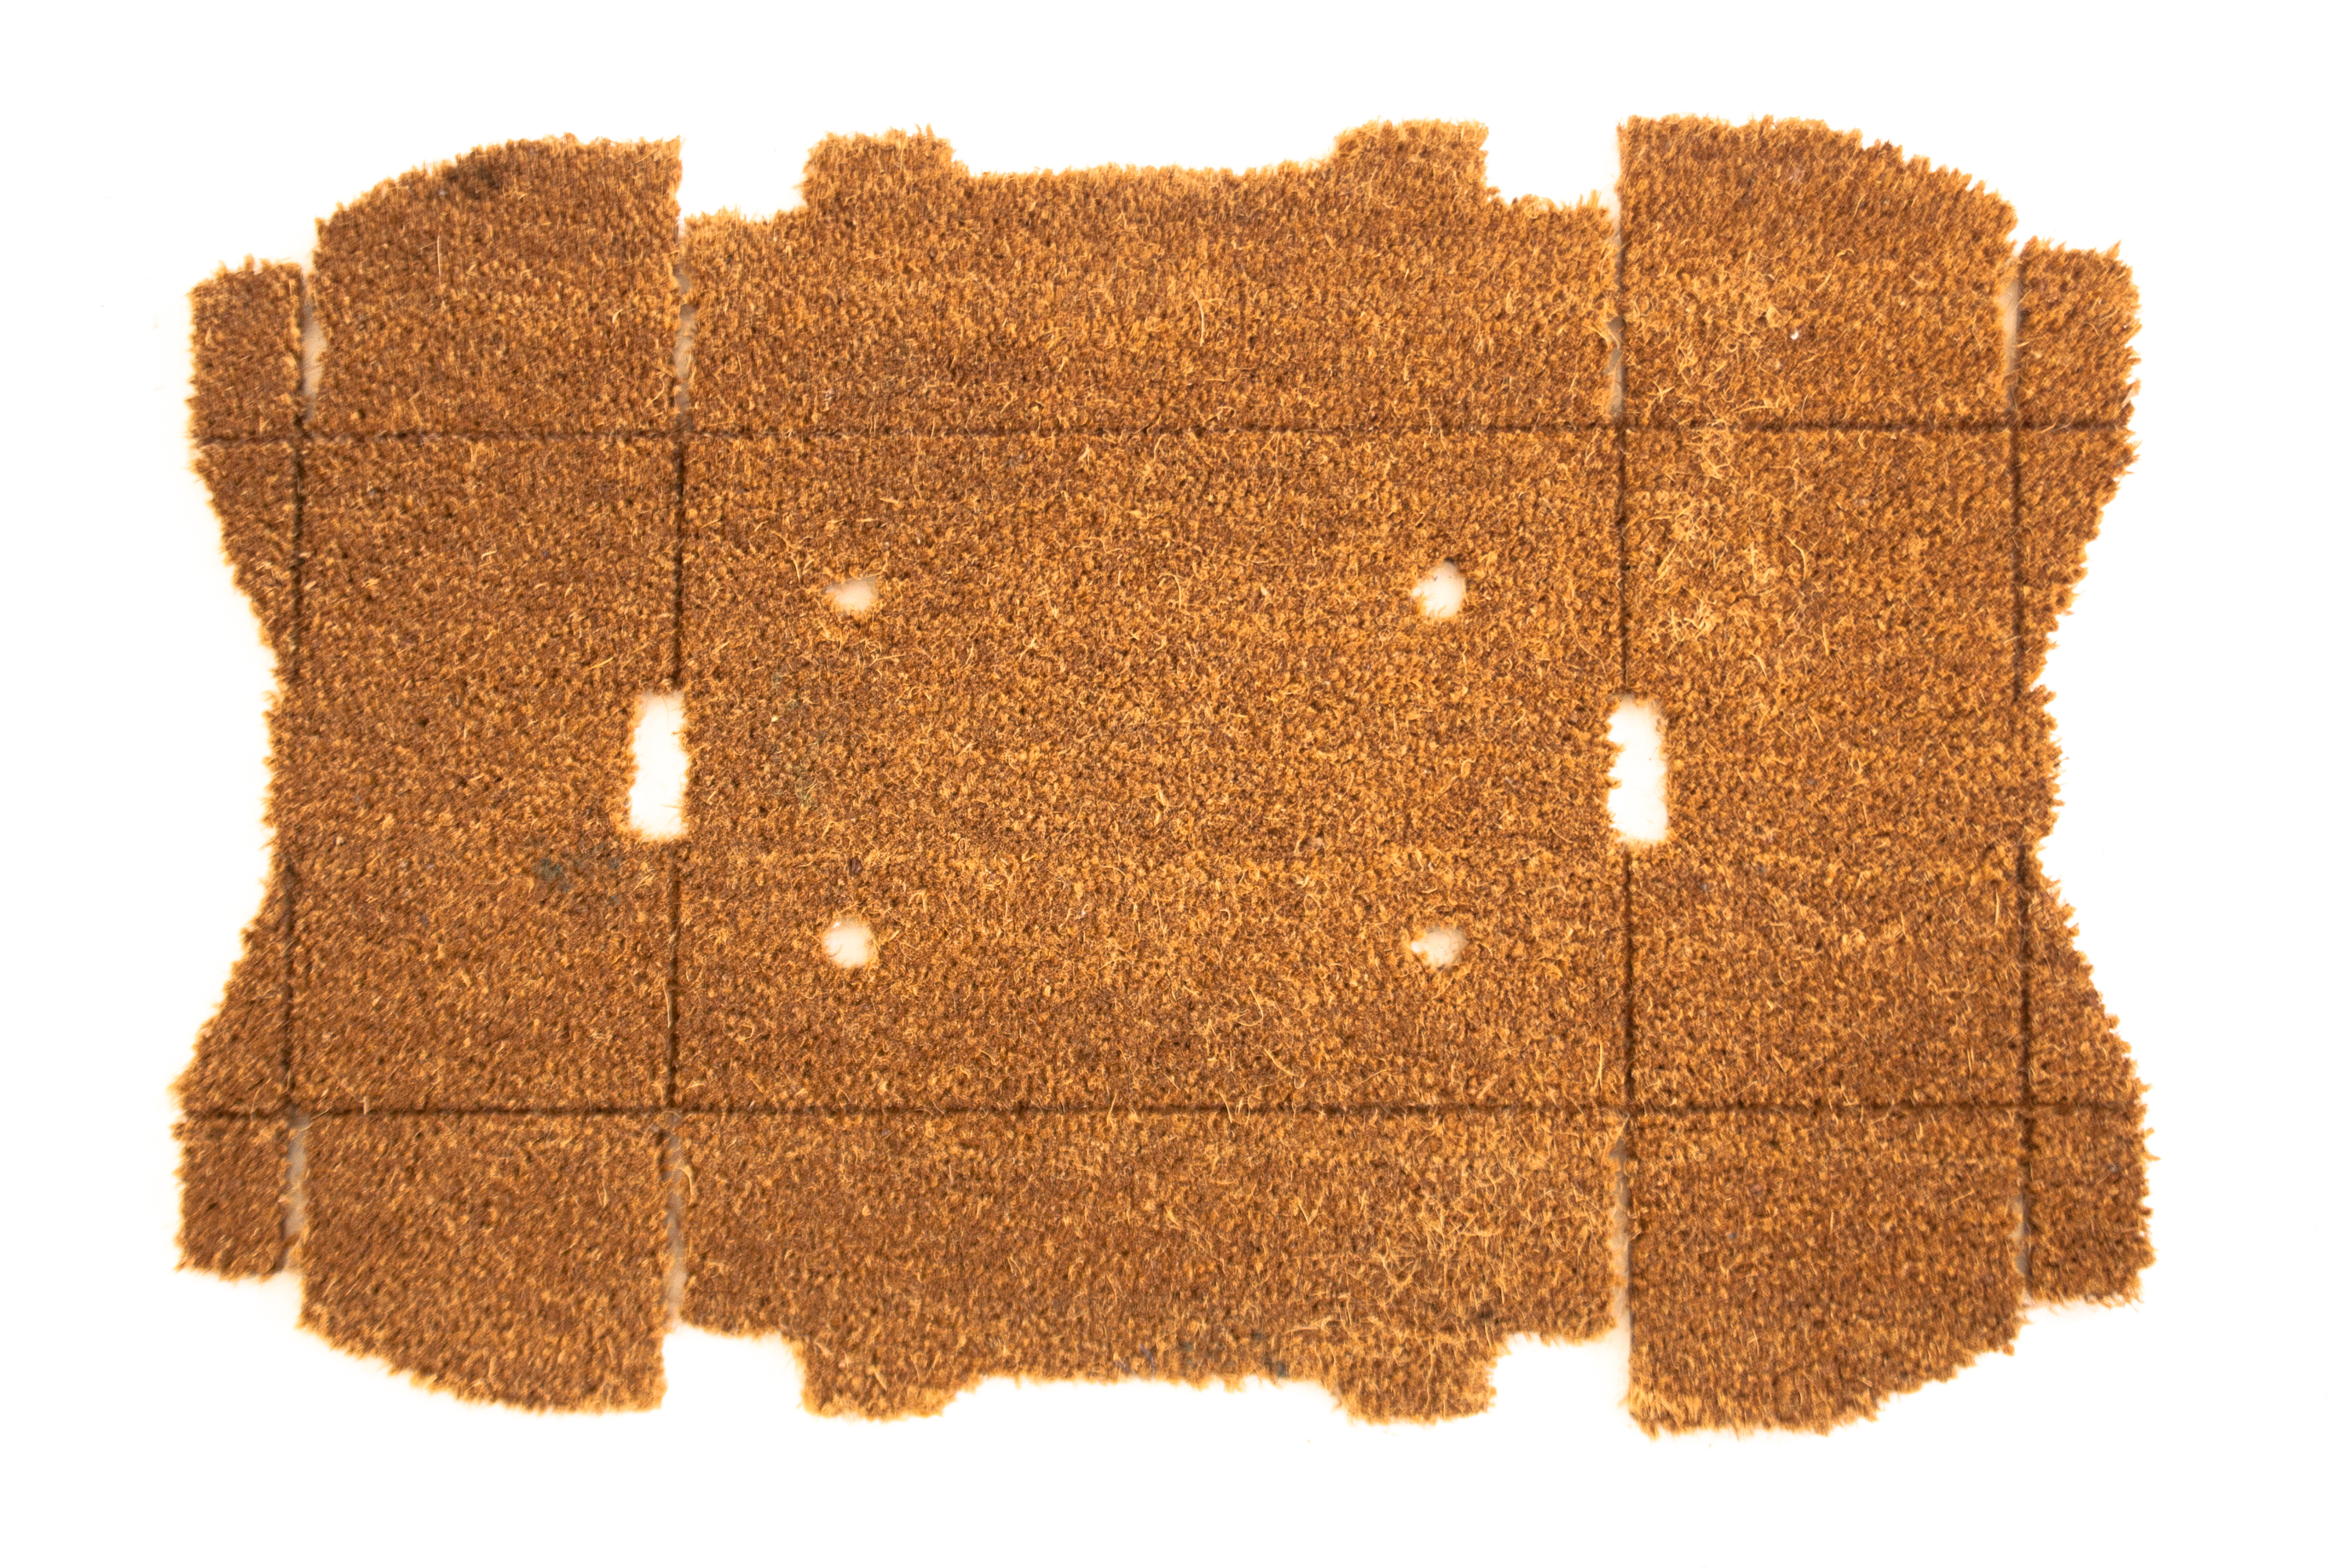 Doosmat flat, a doormat in the shape of a flattened cardboard box, designed by Jarle Veldman